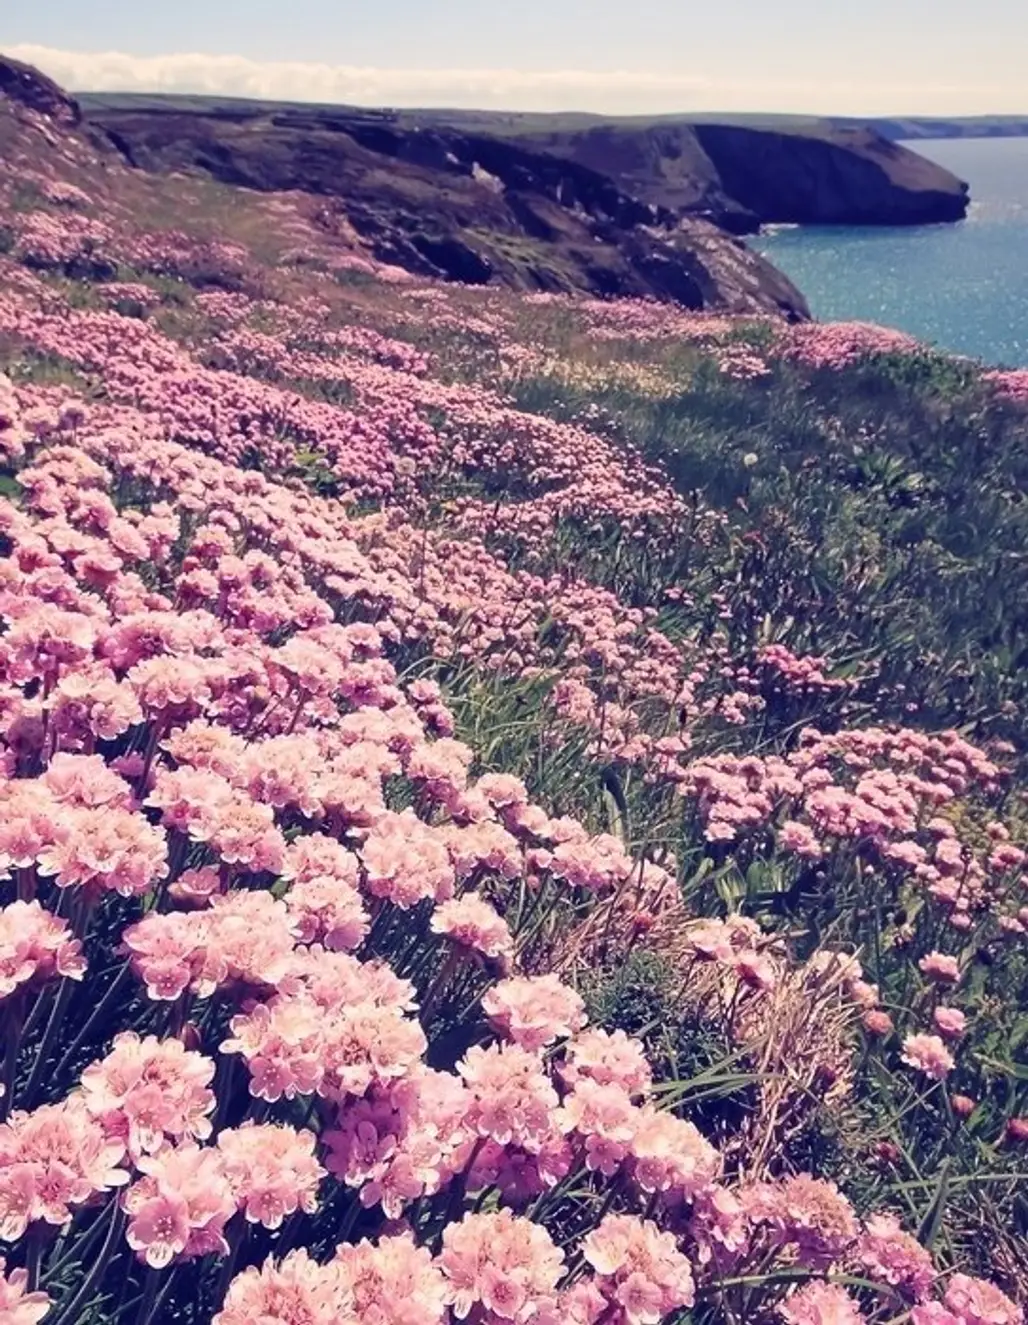 Pink Flower Headland